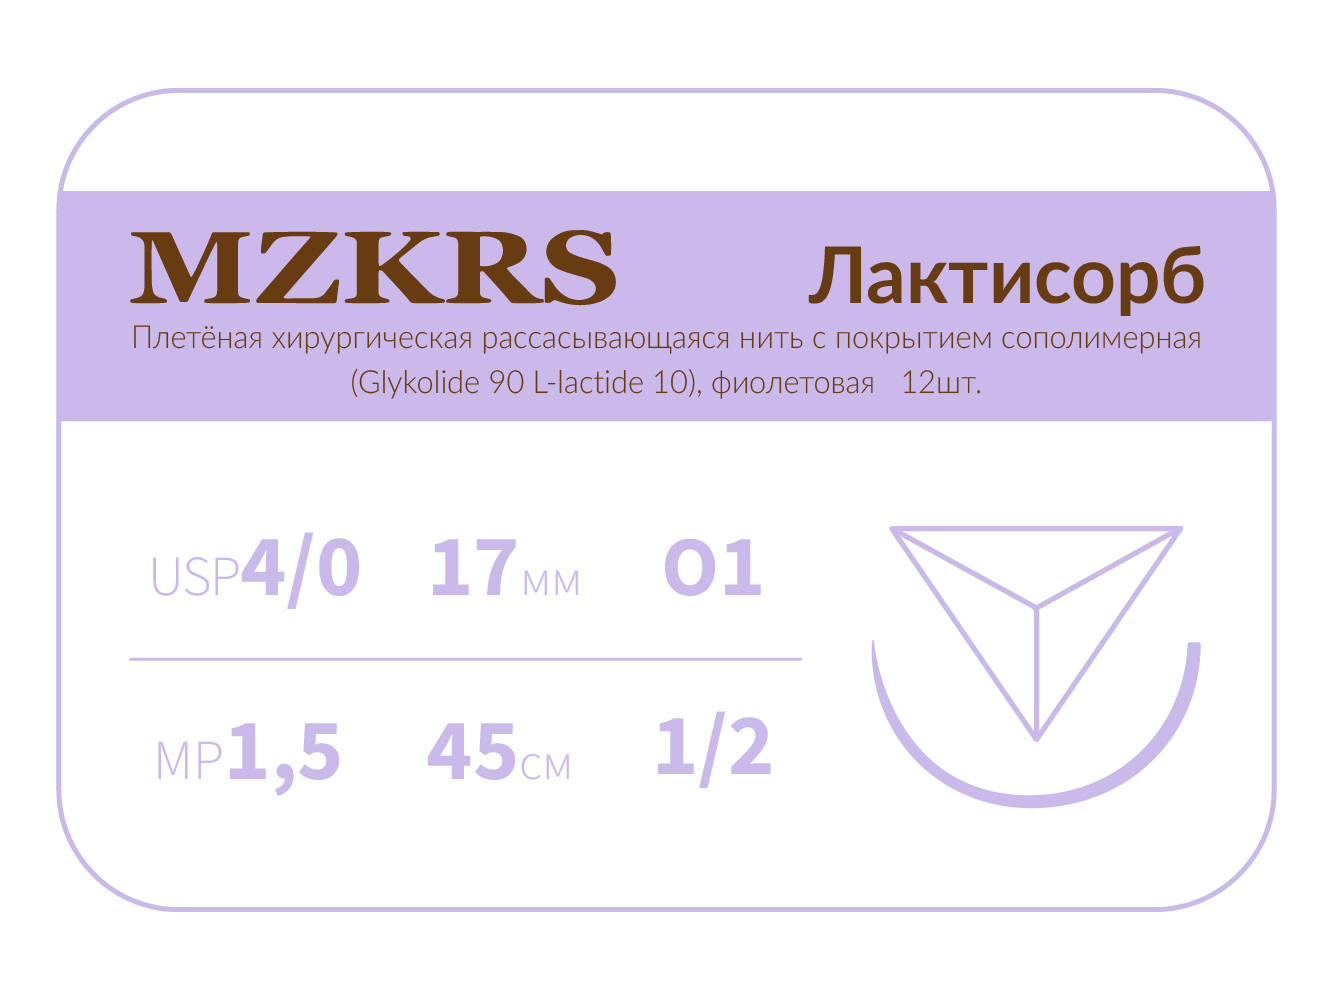 1712О1 Premium-4/0 (1.5)45 ПГЛ ЛАКТИСОРБ хирургическая нить сополимерная, обратно-режущая игла, MZKRS (Россия)